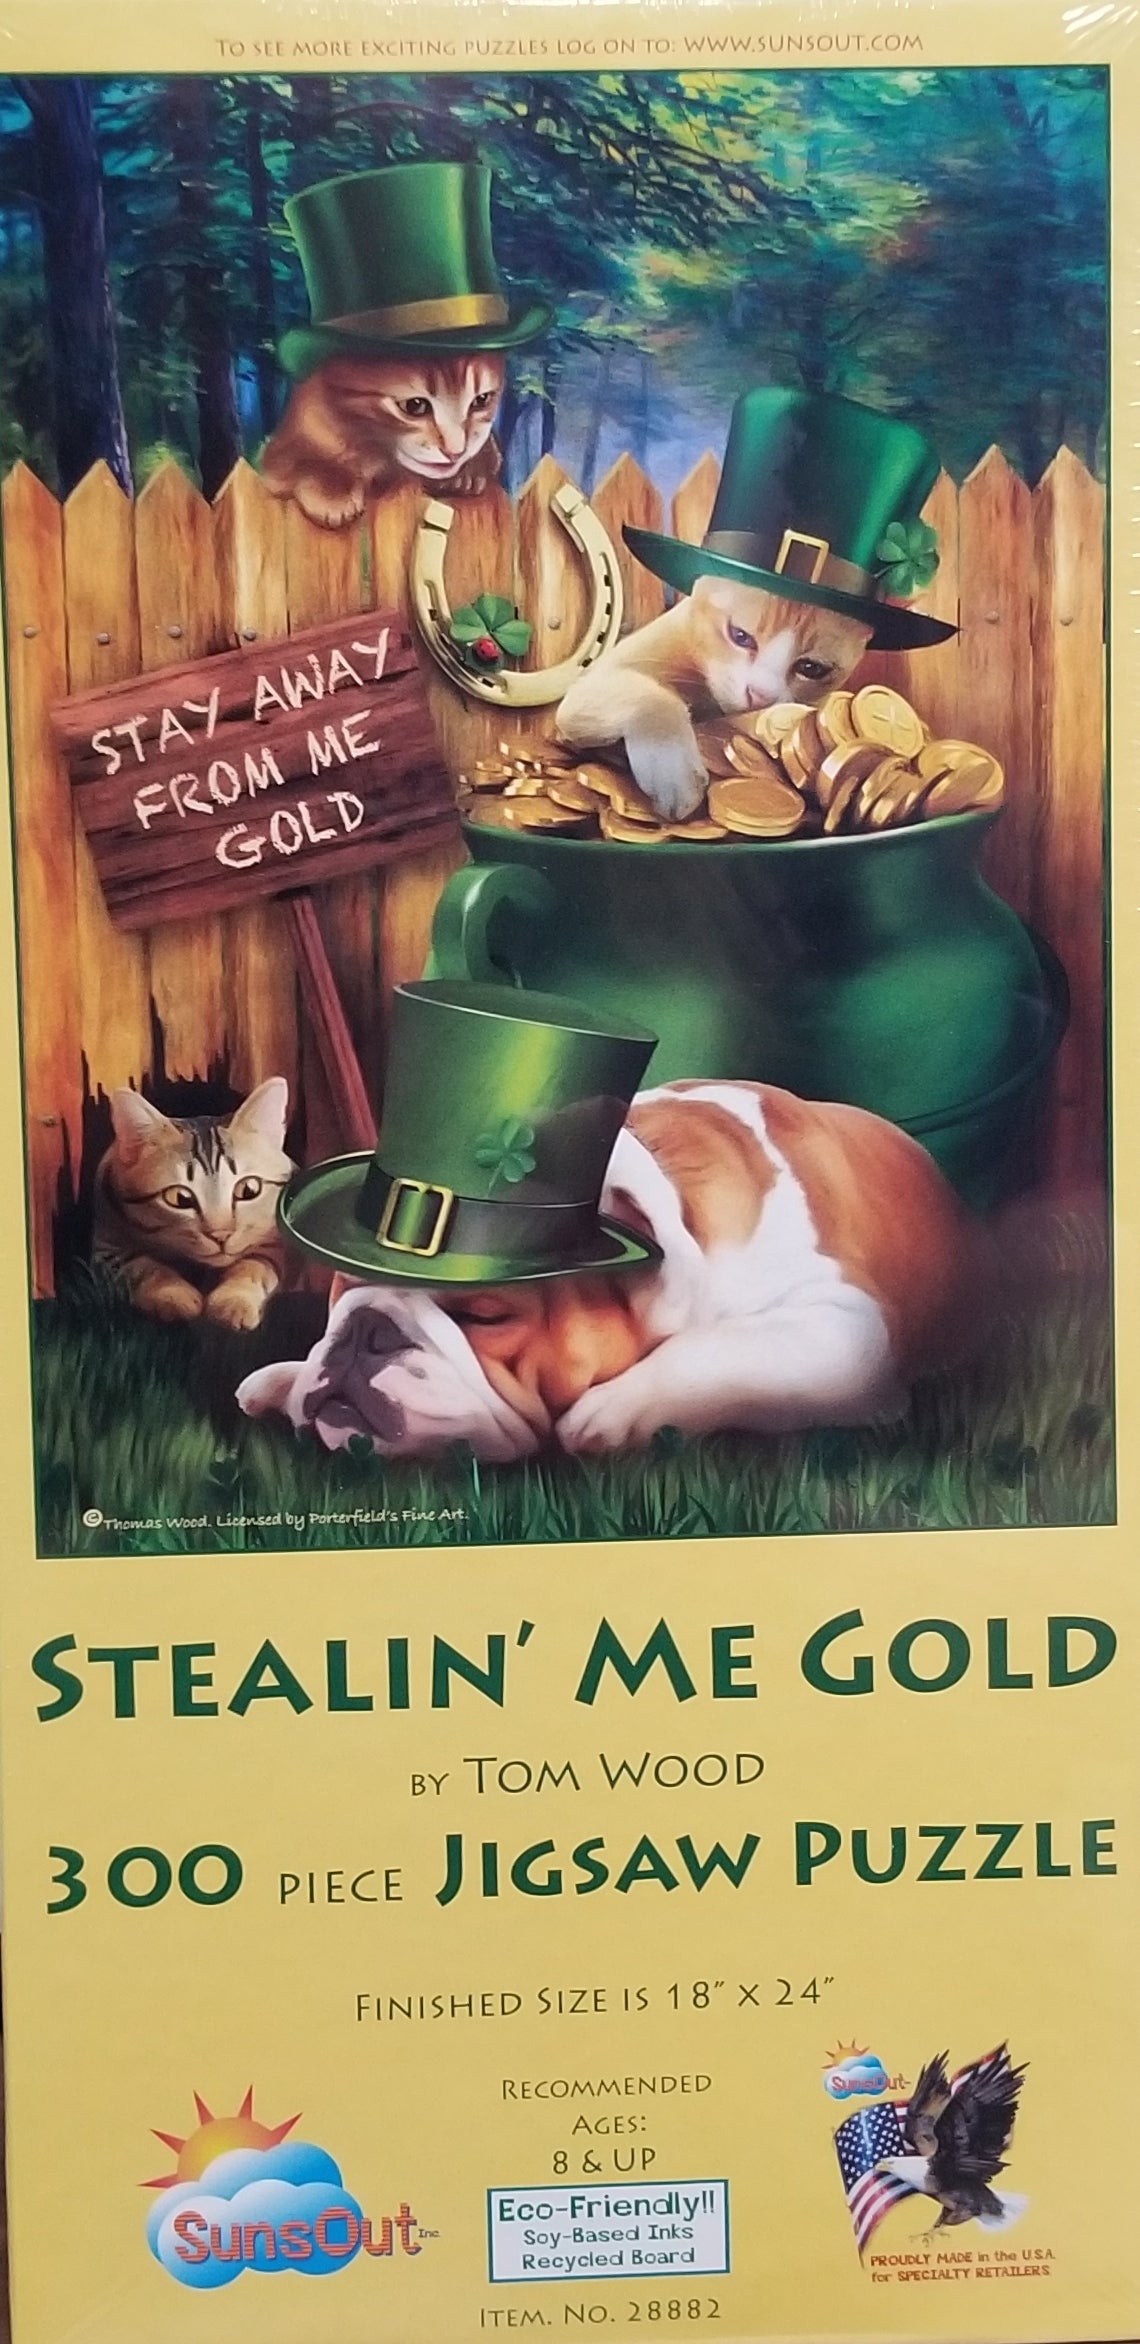 Stealin' Me Gold af Tom Wood, 300 brikker puslespil